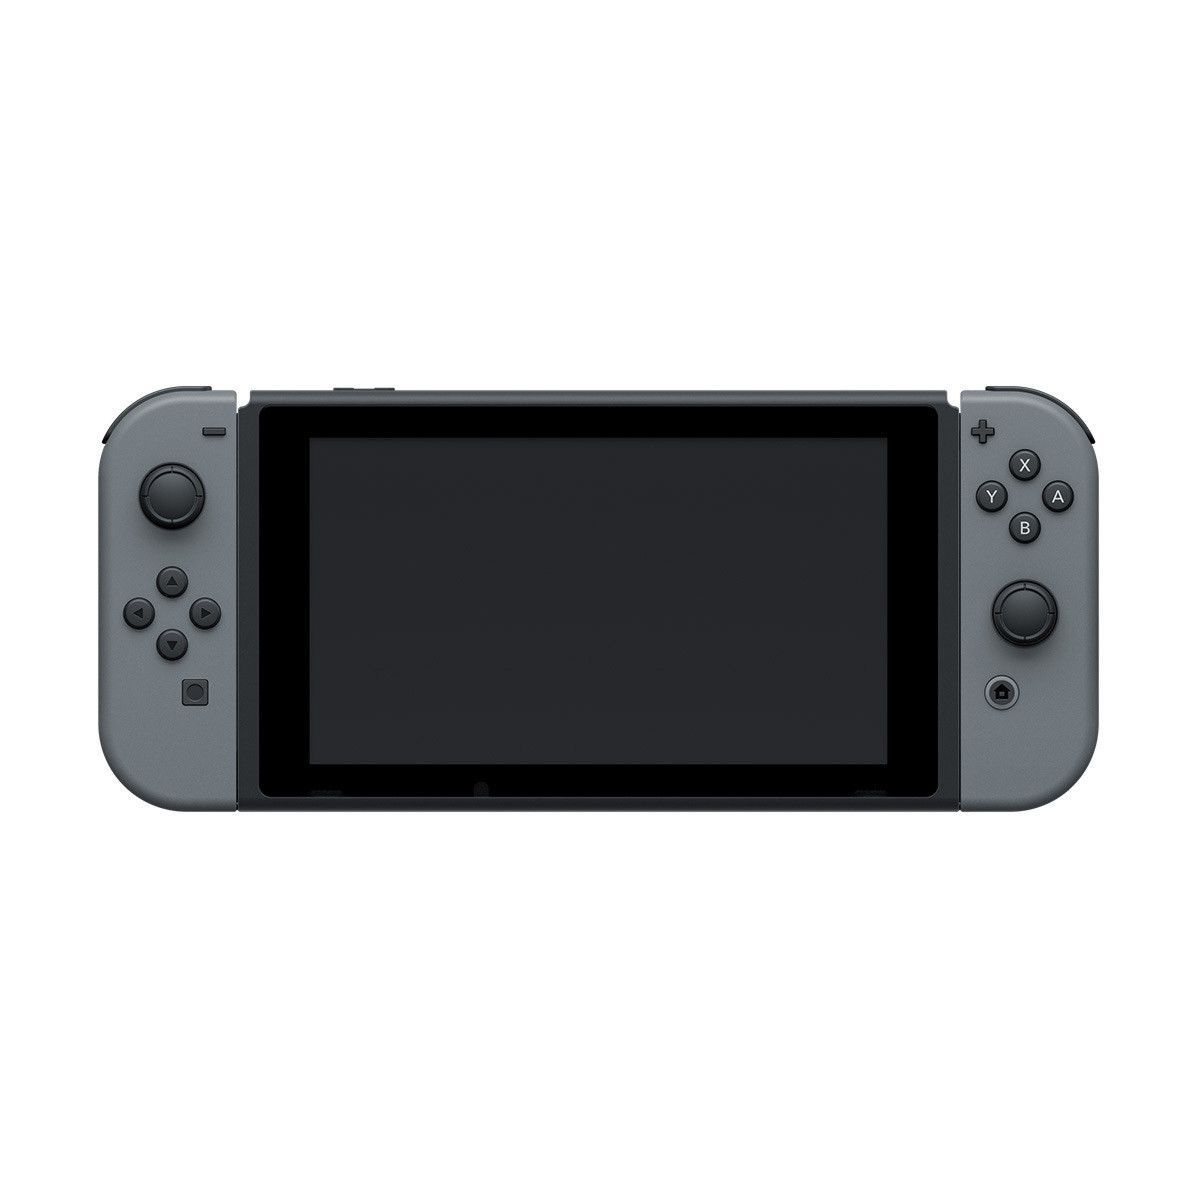 Nintendo switch купить в москве. Игровая консоль Nintendo Switch. Игровая приставка Nintendo Switch Rev.2 32 ГБ. Портативная игровая консоль Nintendo Switch. Игровая приставка Nintendo Switch Lite 32 ГБ.